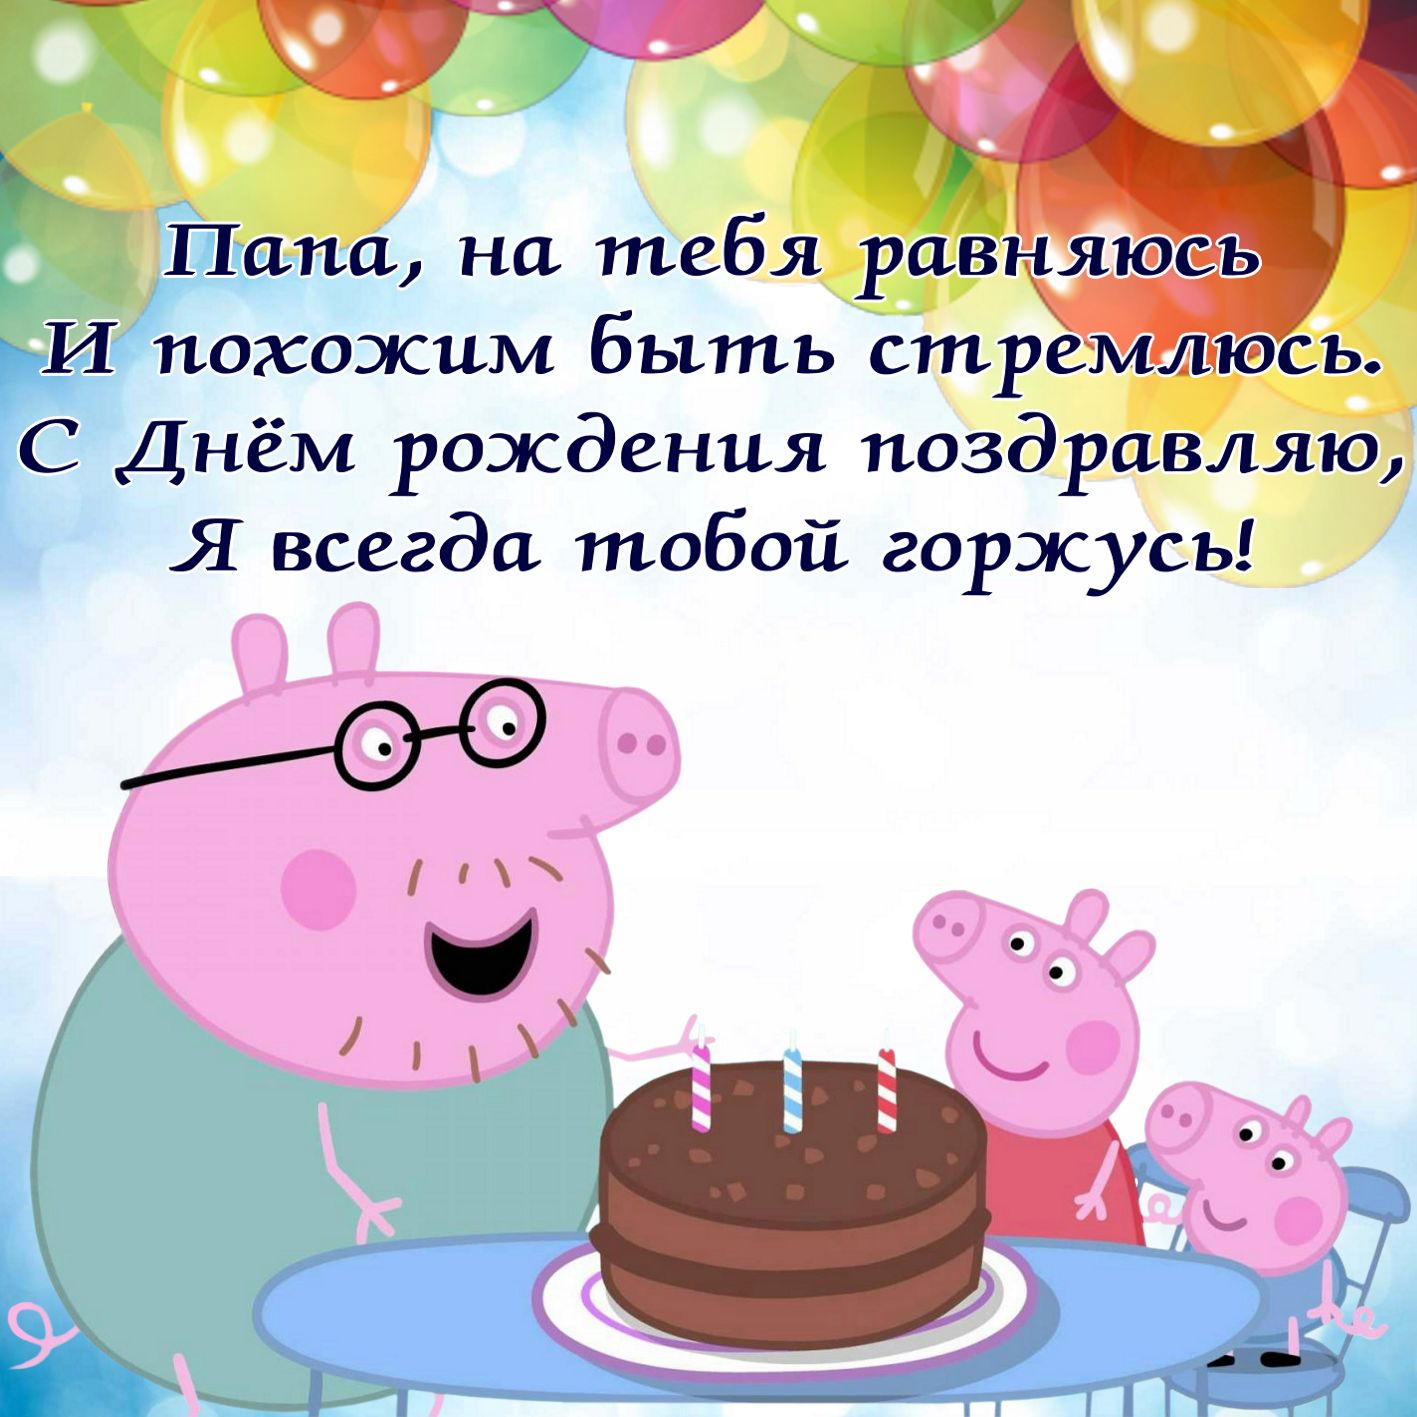 Поздравления с днем рождения папе прикольные смешные | pzdb.ru - поздравления на все случаи жизни